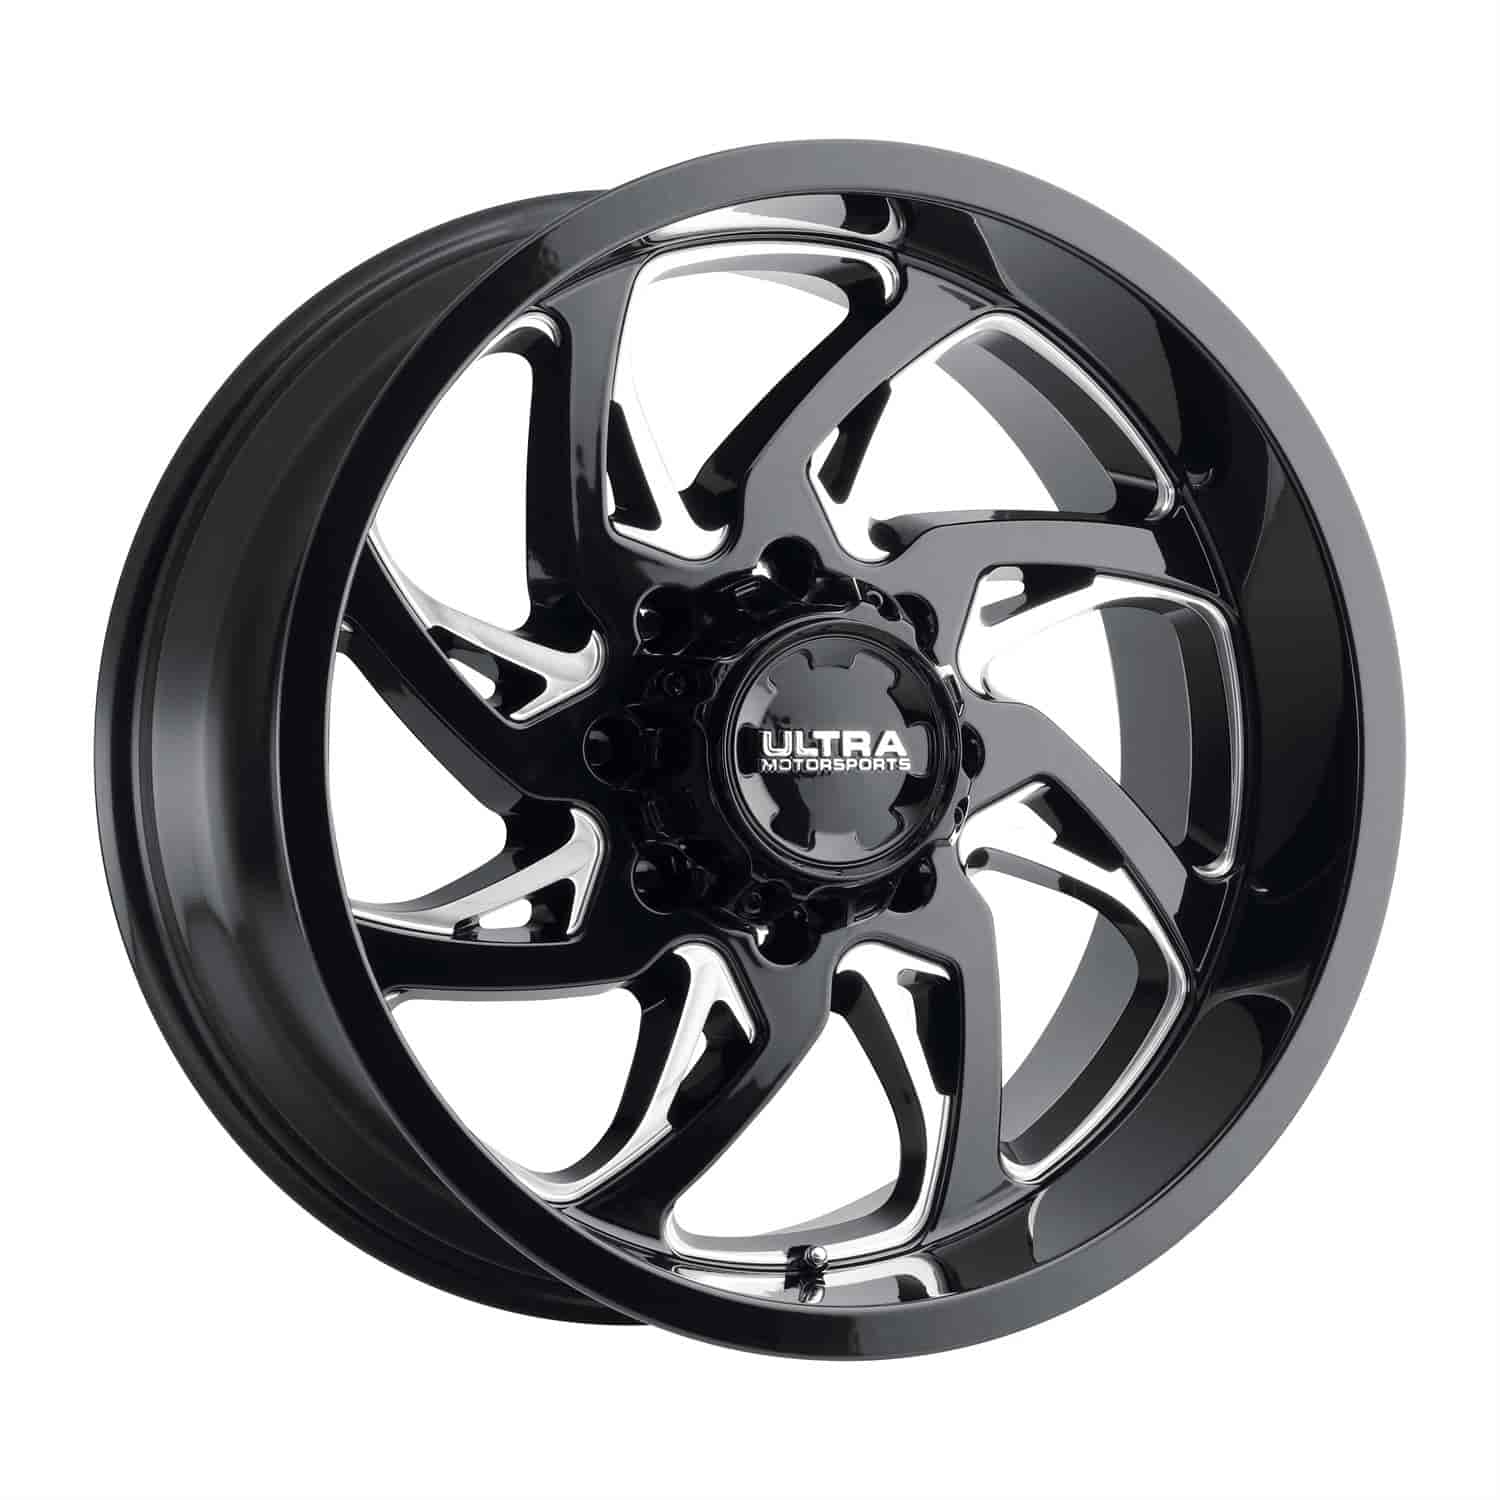 230-Series Villain Wheel, Size: 20x10", Bolt Pattern: 6x5.5"/6x135 mm [Gloss Black w/Milled Accents]